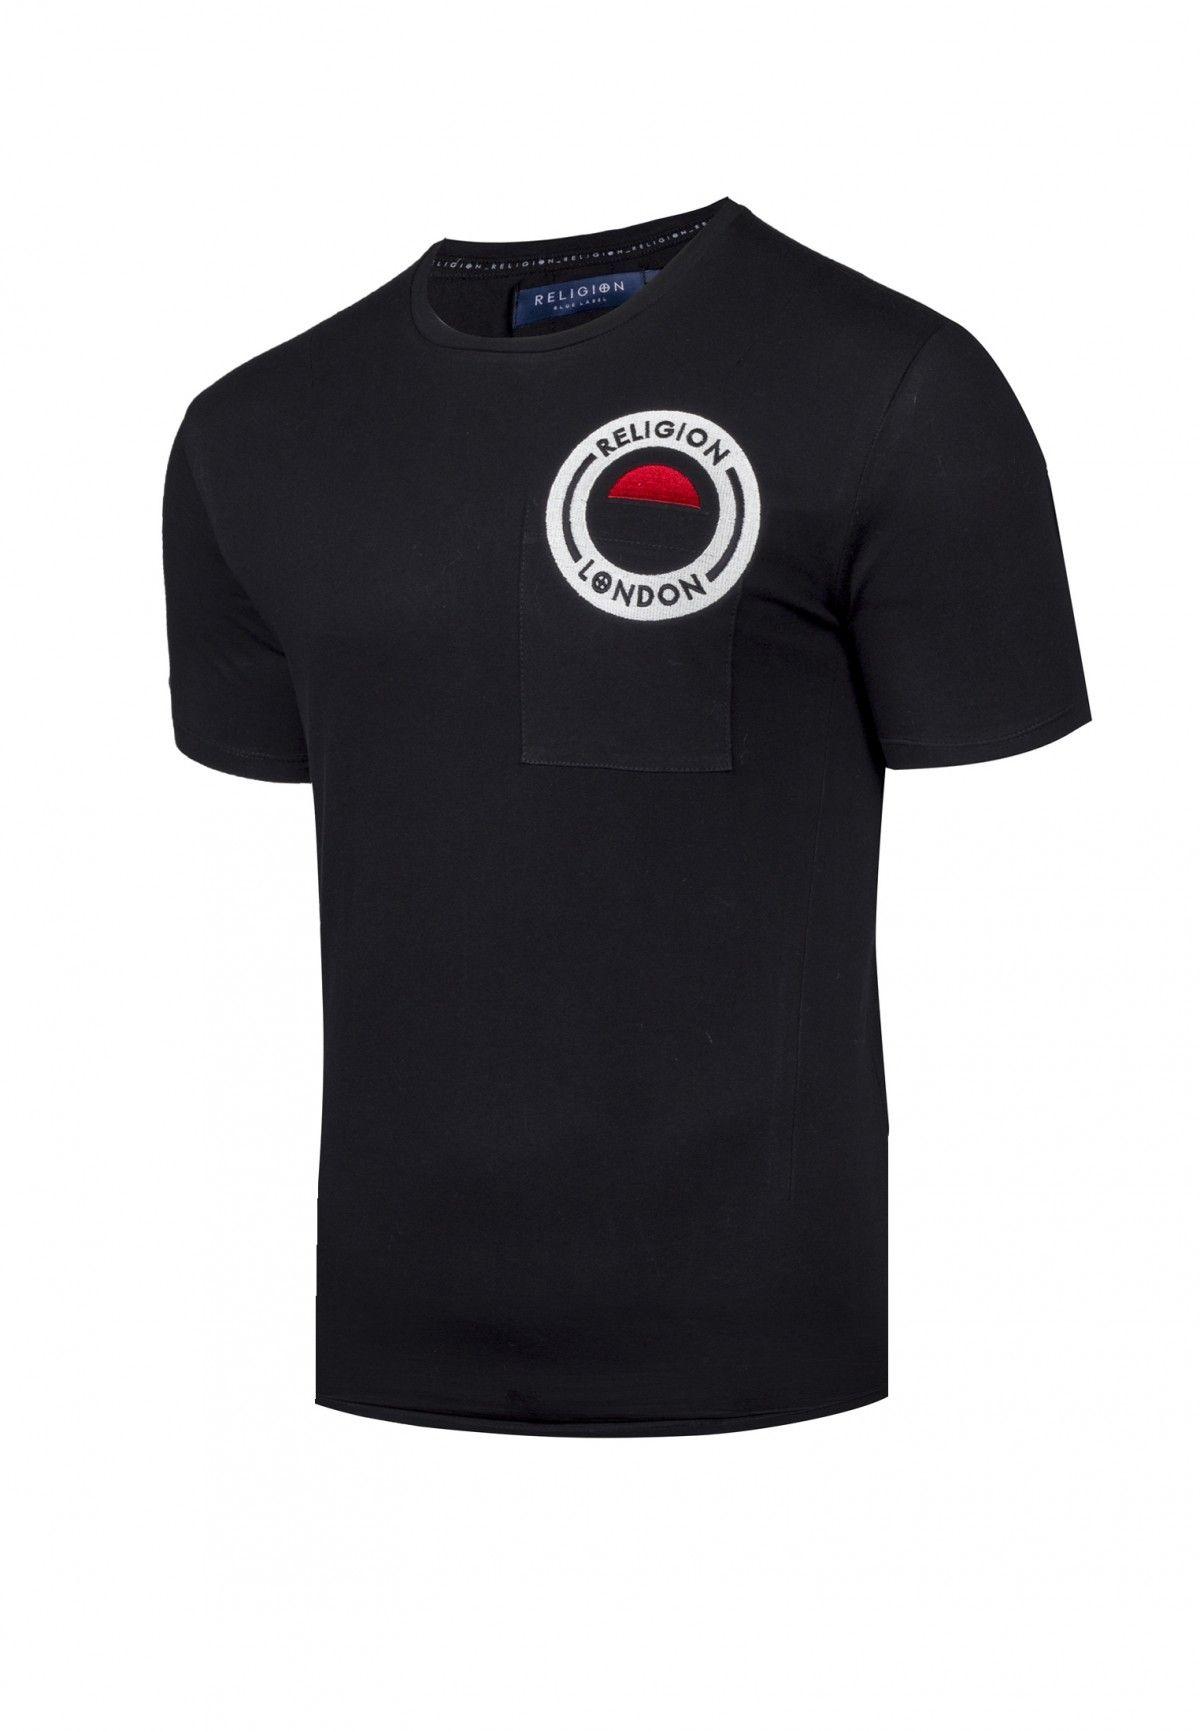 Circle Clothing Logo - Religion Muscle Fit Circle Logo Black T-Shirt | Religion Clothing